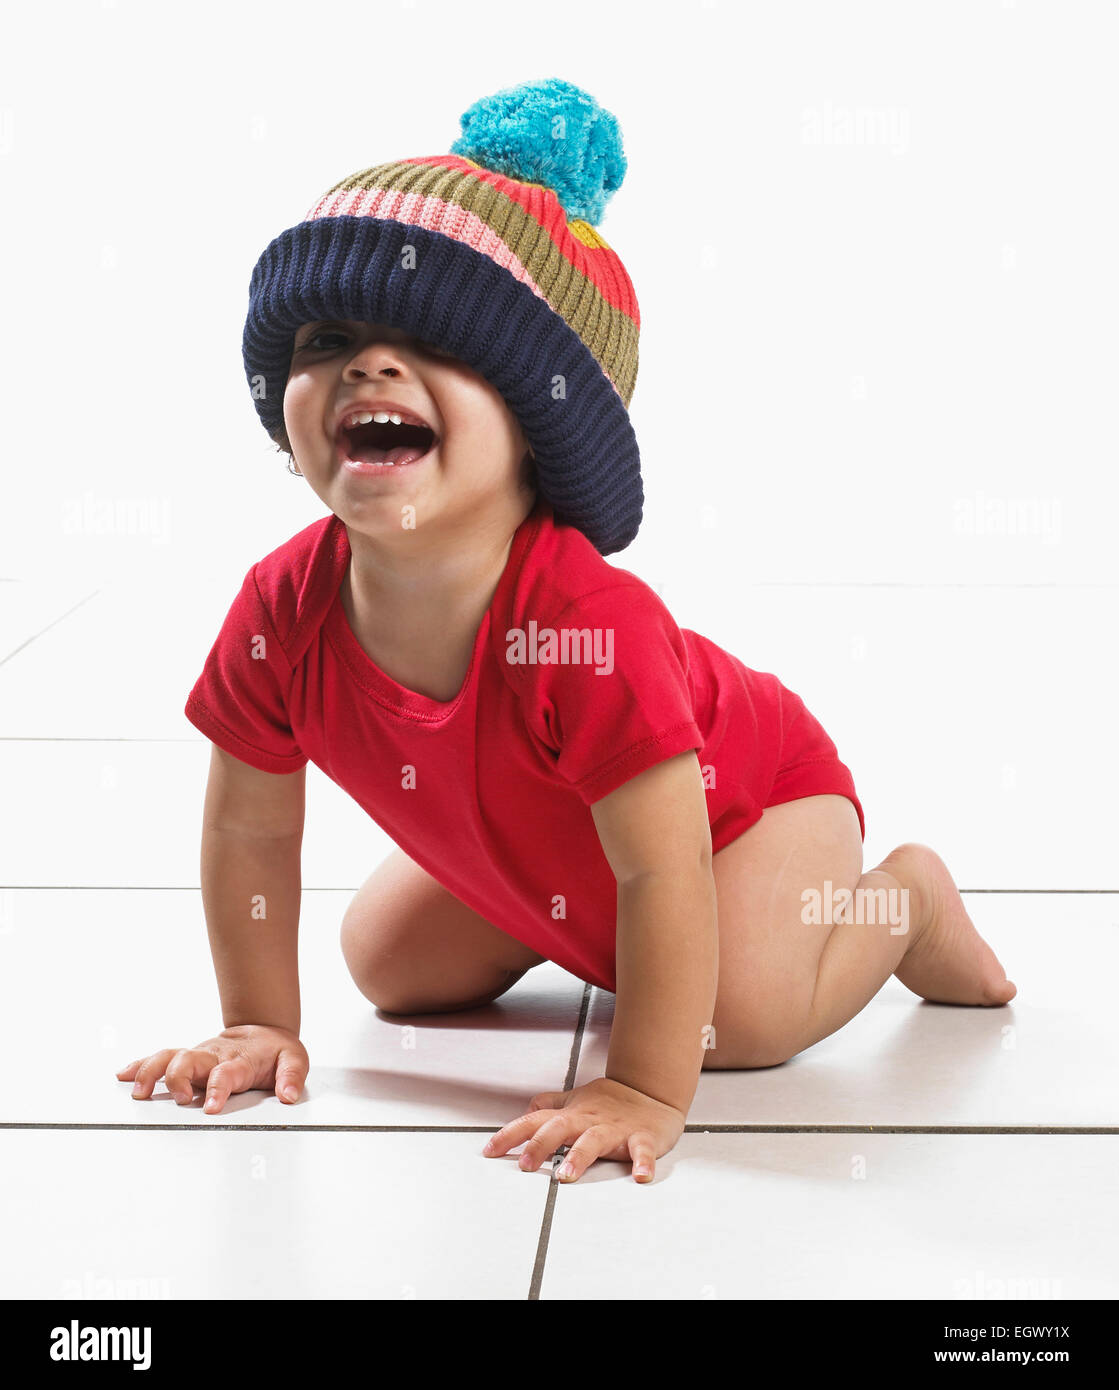 Junge (16 Monate) kniend am Boden lachen, Weste und große gestrickte Pudelmütze tragen Stockfoto